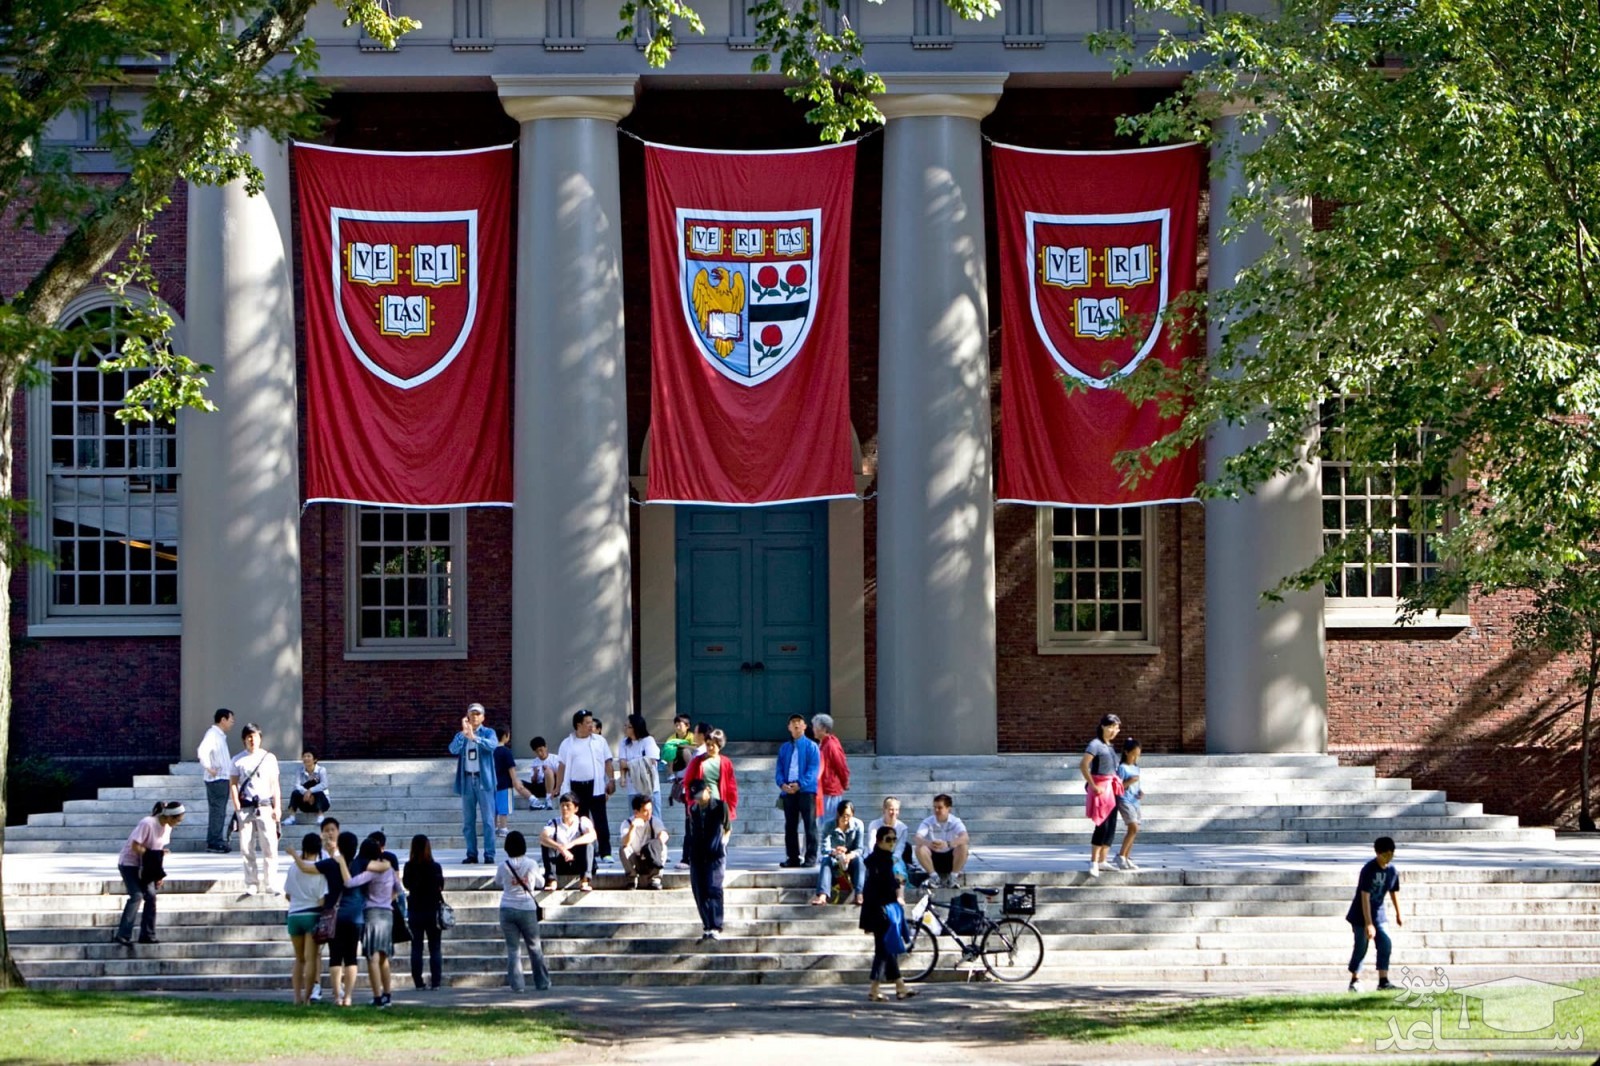 تصاویری خفن و باورنکردنی از خوابگاه دانشجویان دانشگاه هاروارد آمریکا